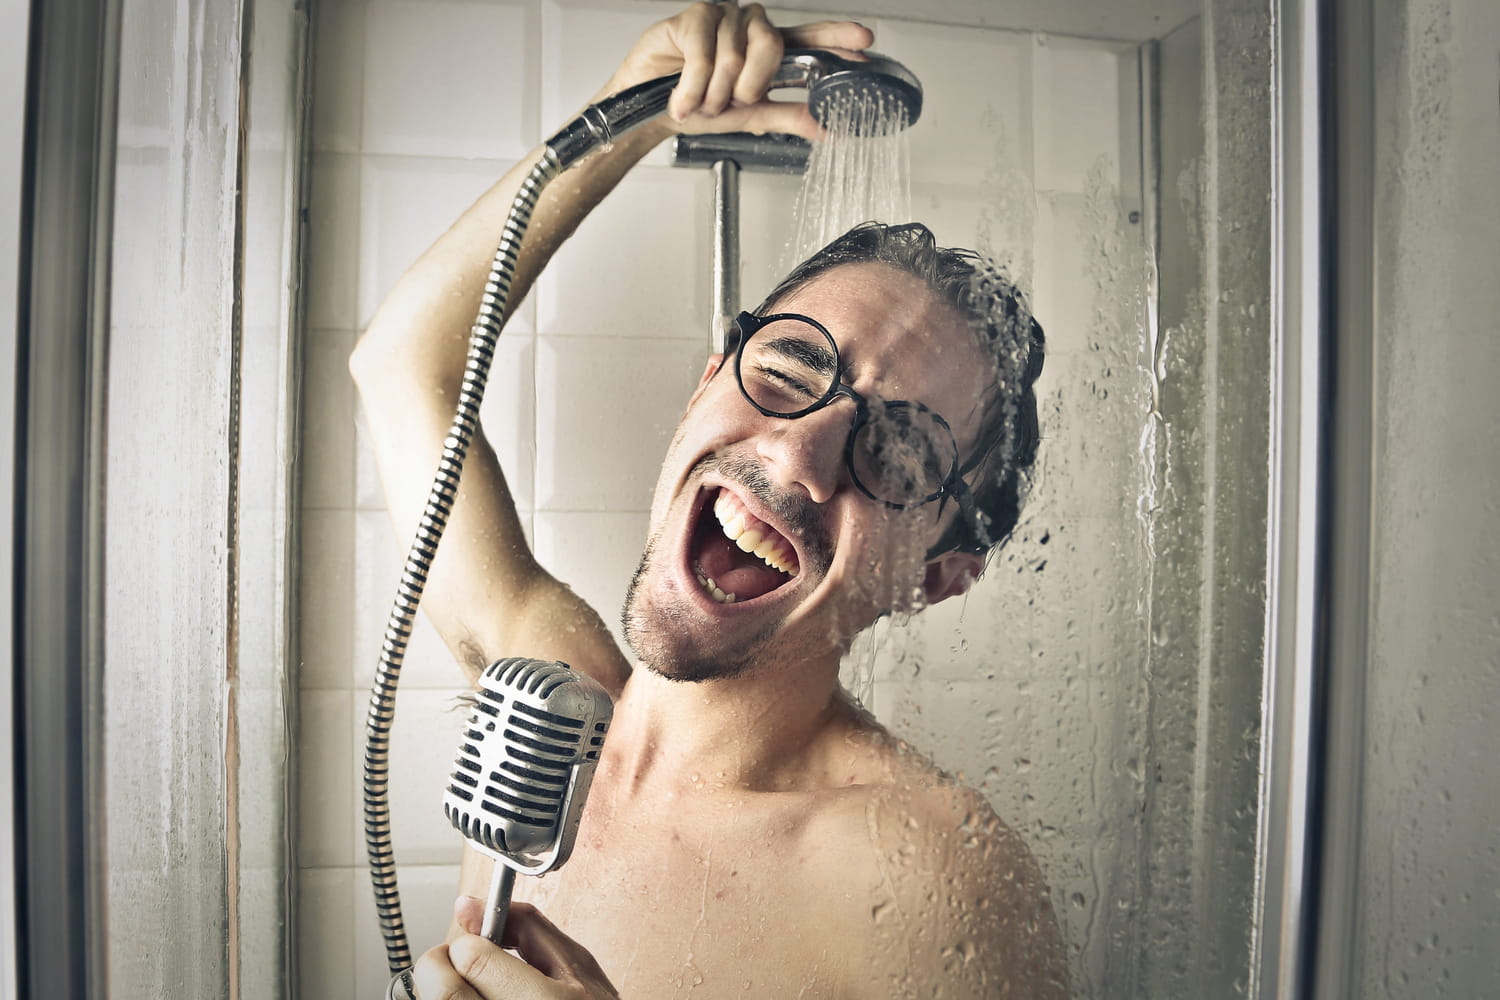 Vous adorez chanter (fort) sous la douche ? Cela pourrait vous coûter très cher